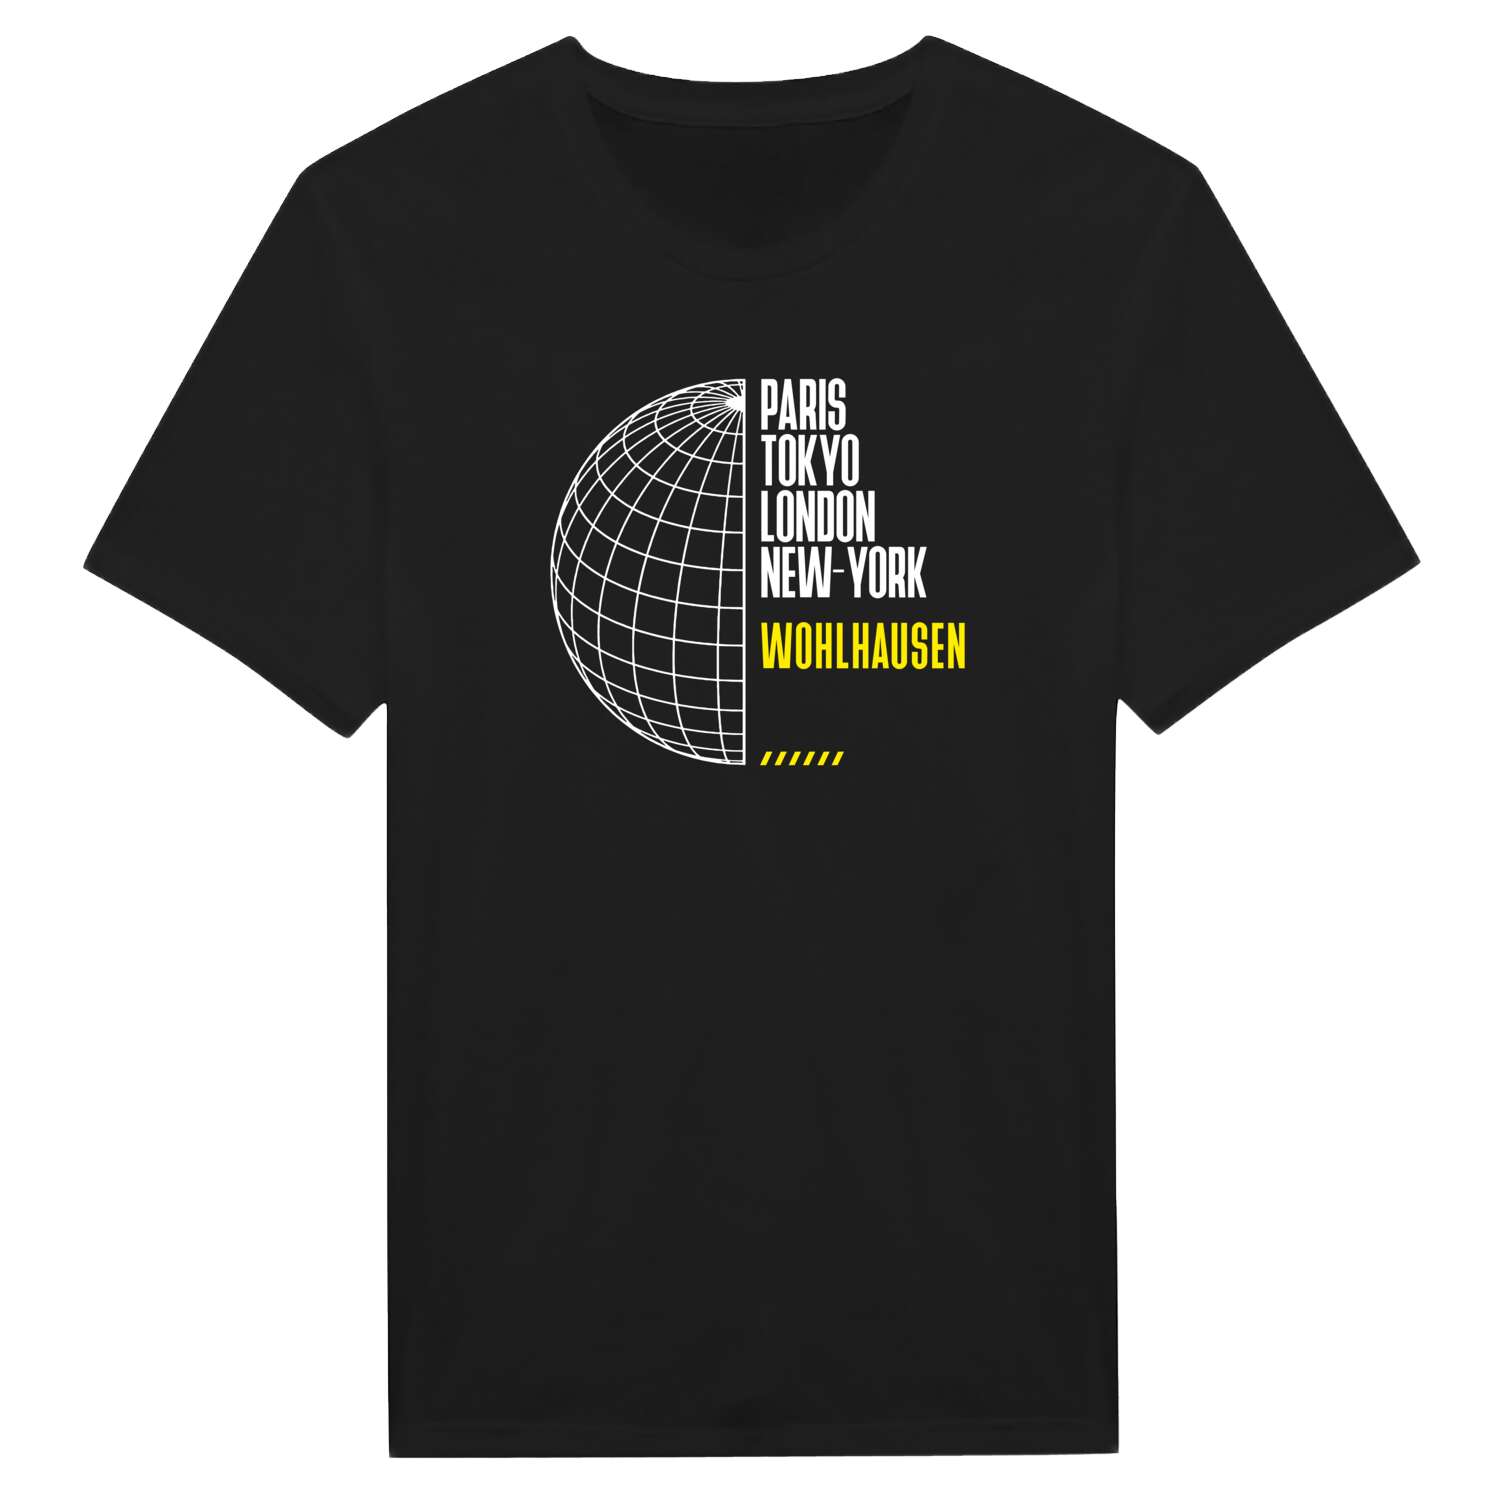 Wohlhausen T-Shirt »Paris Tokyo London«